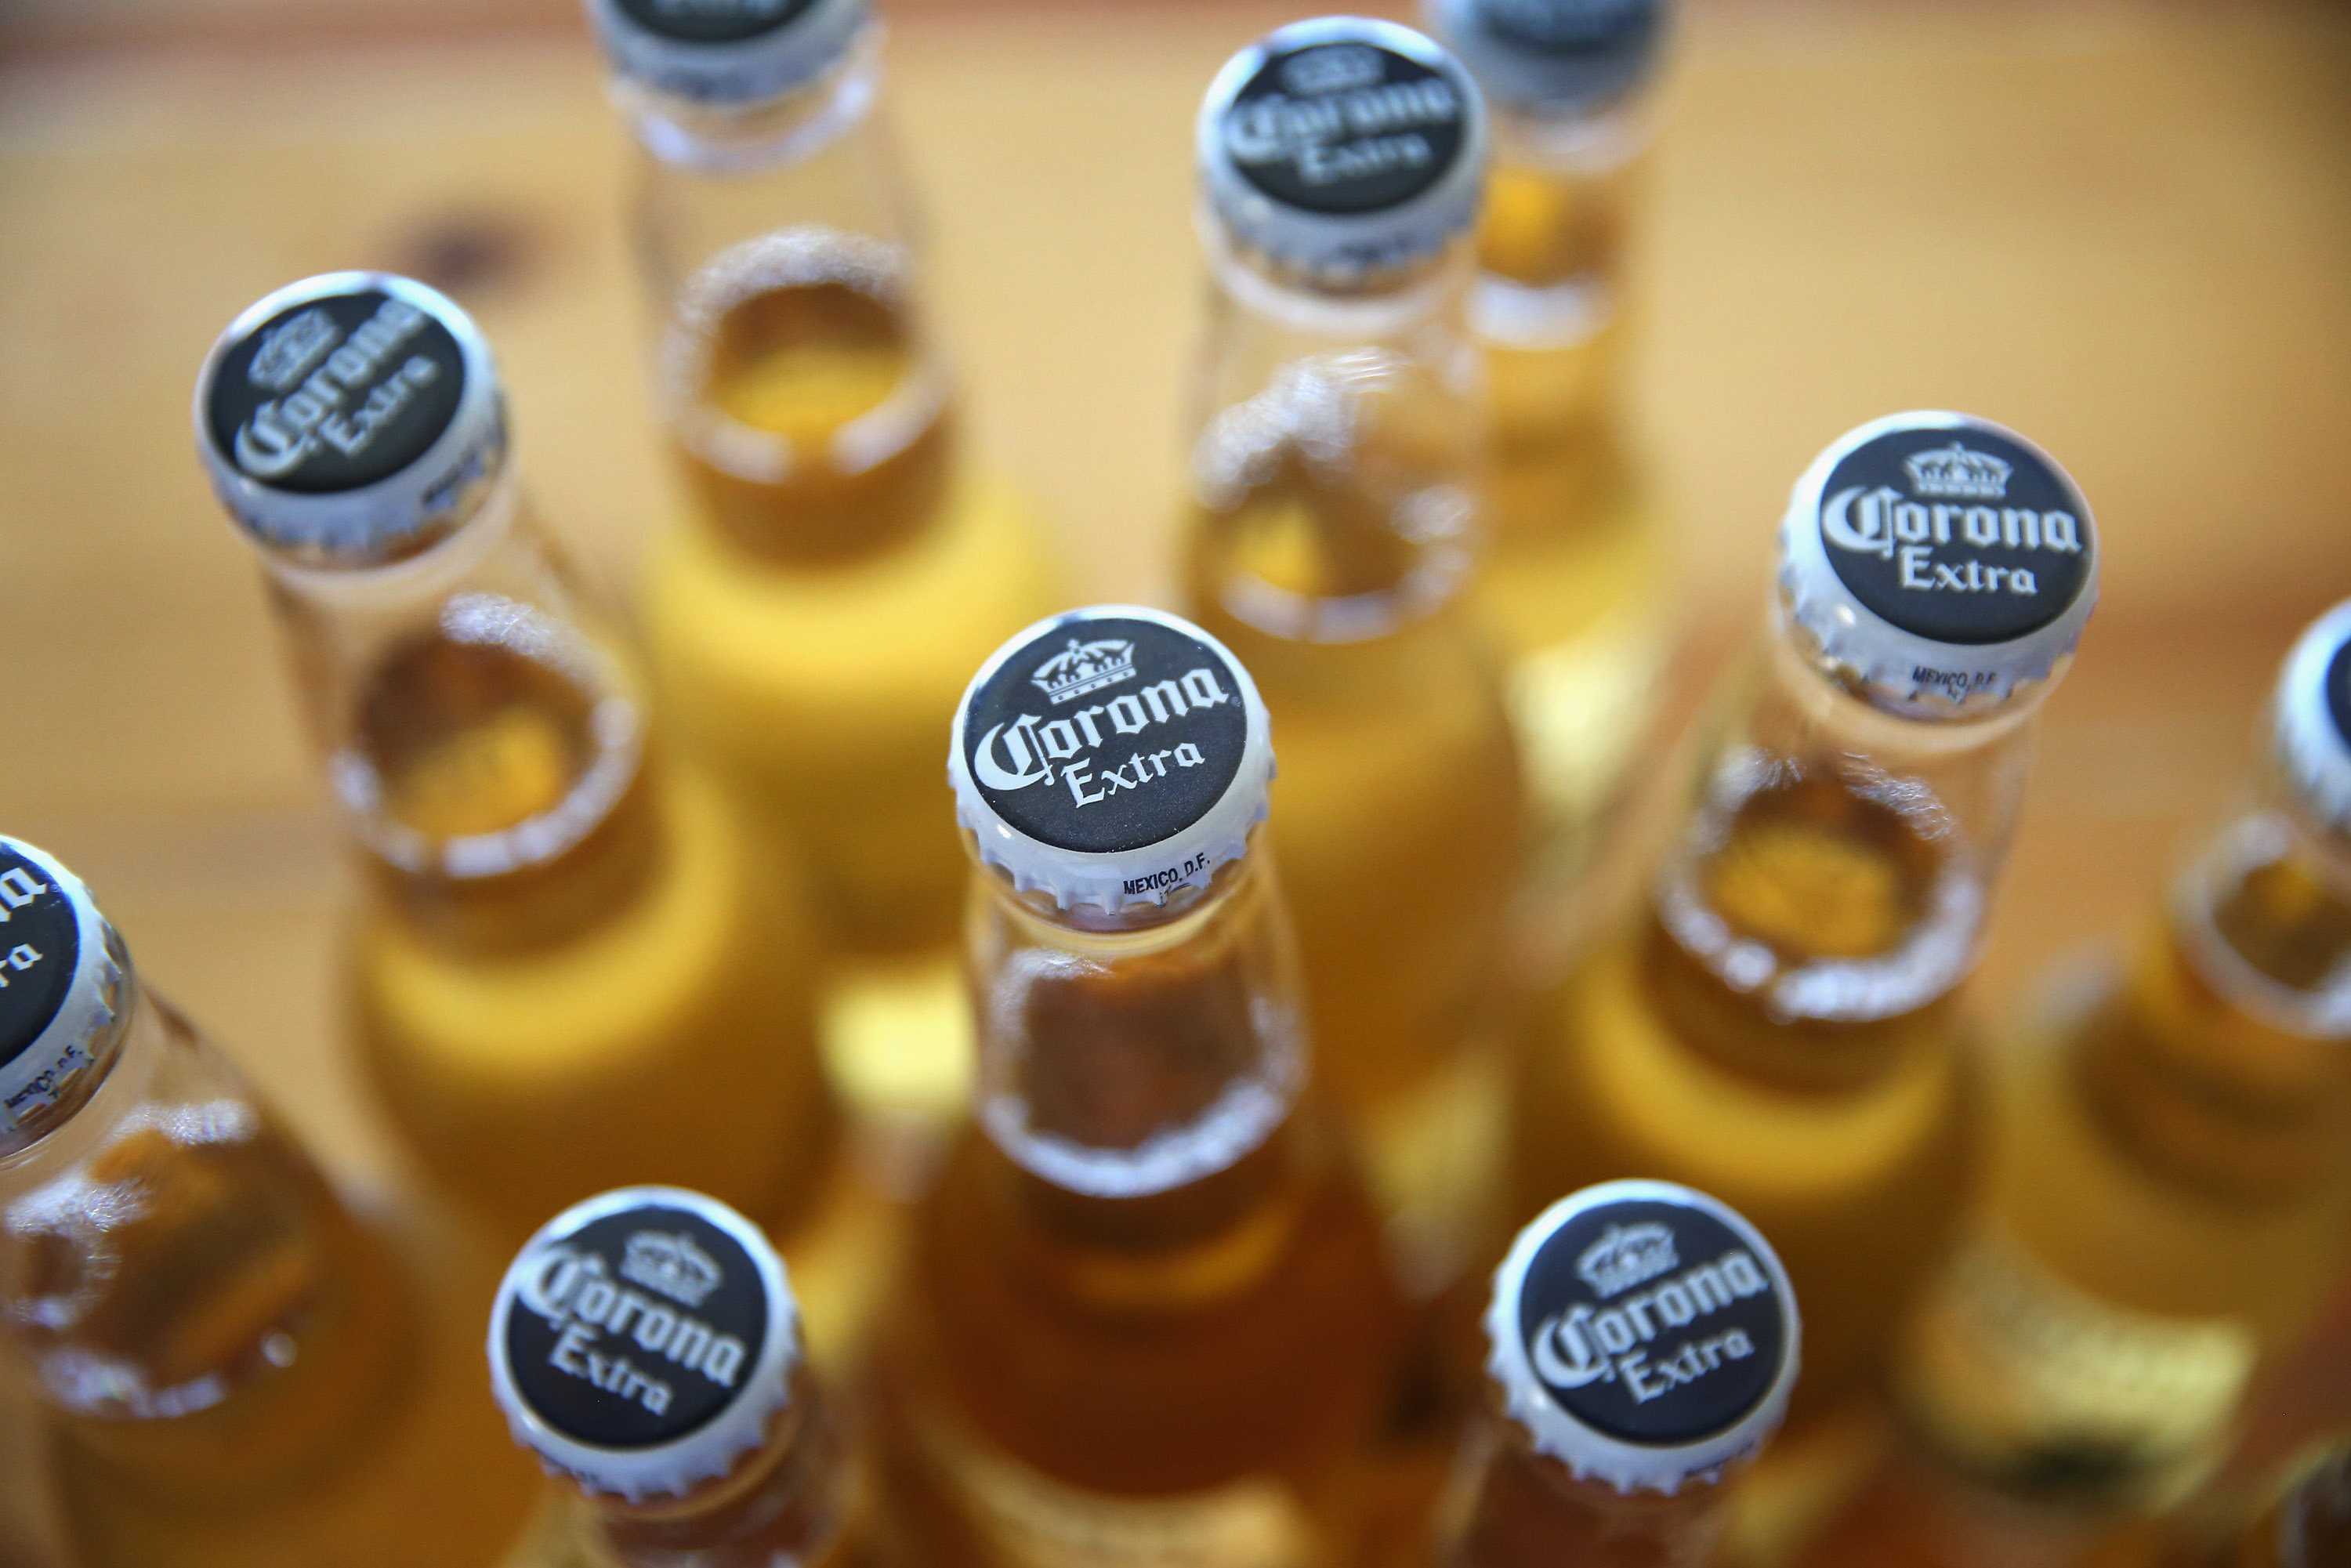 Как пить пиво корона. Corona cerveza пиво. Пиво Corona Extra коронавирус. Мексиканское пиво корона. Пивной стол.